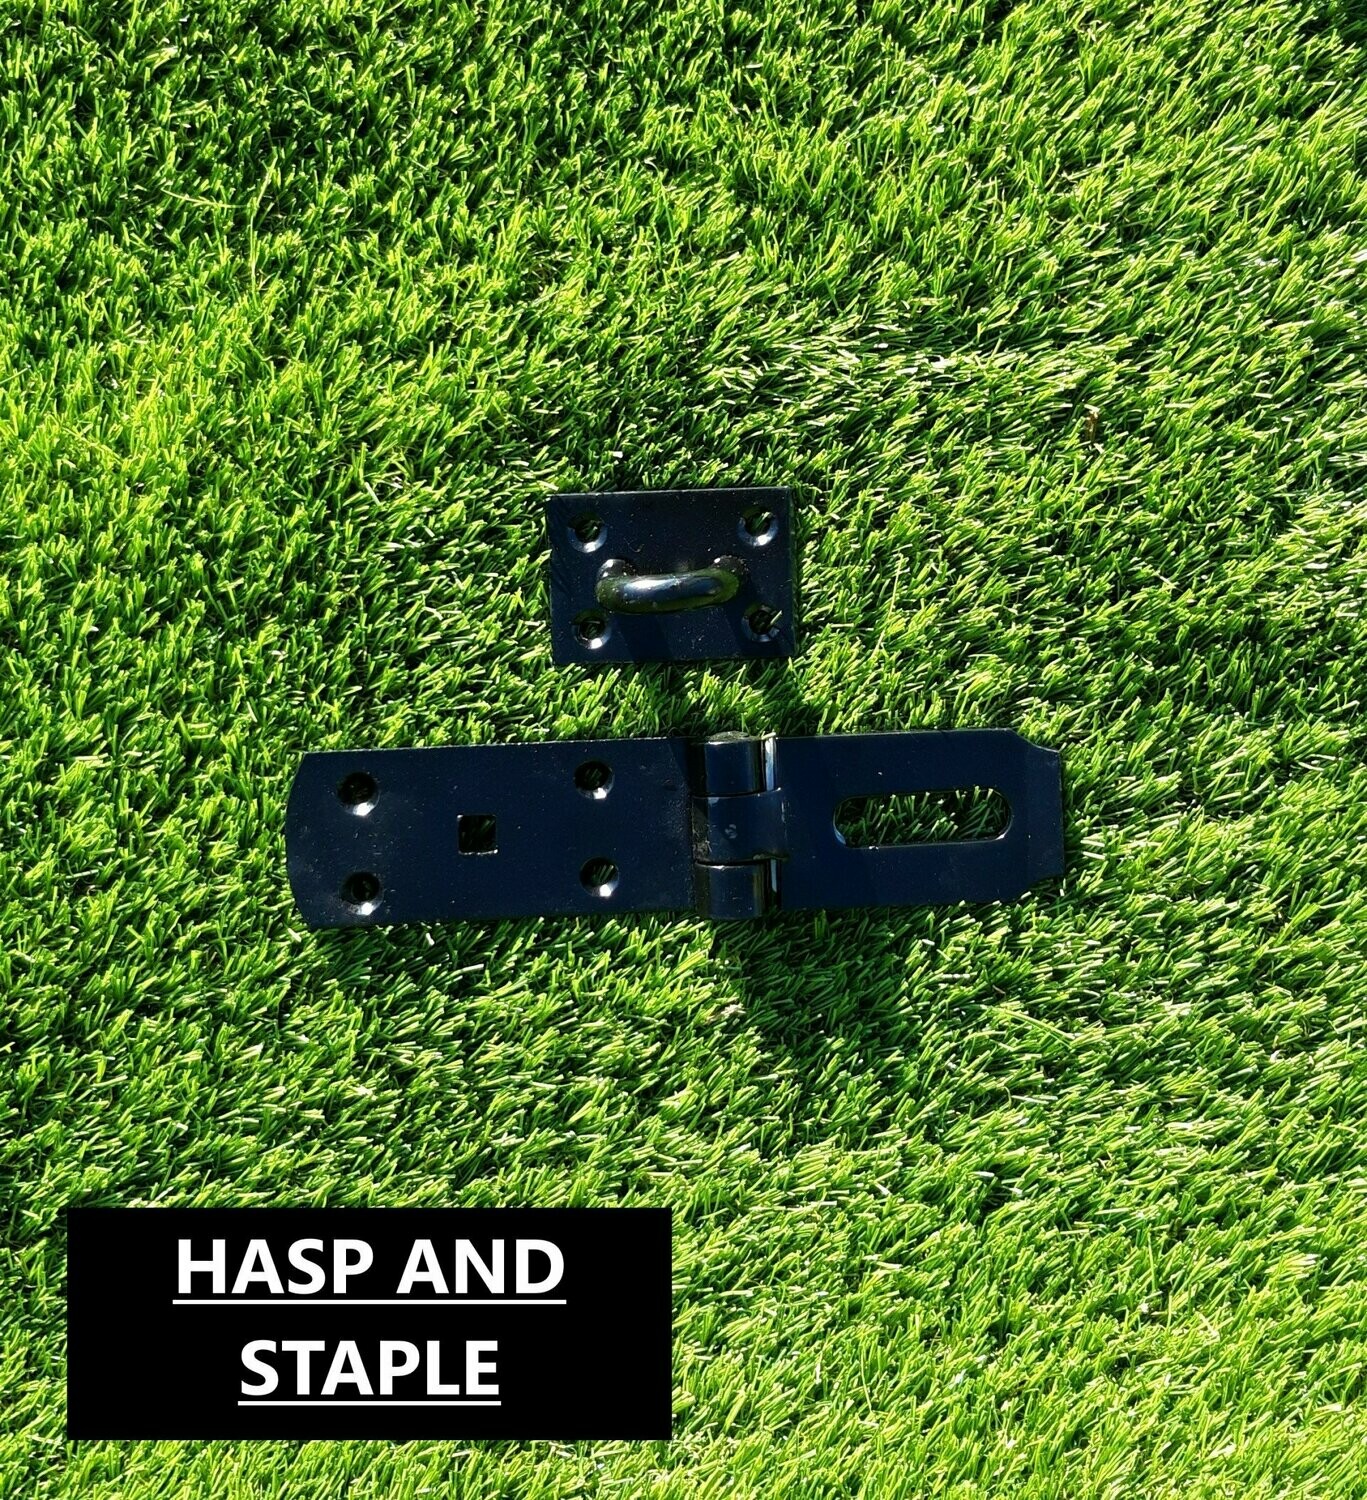 Hasp & Staple